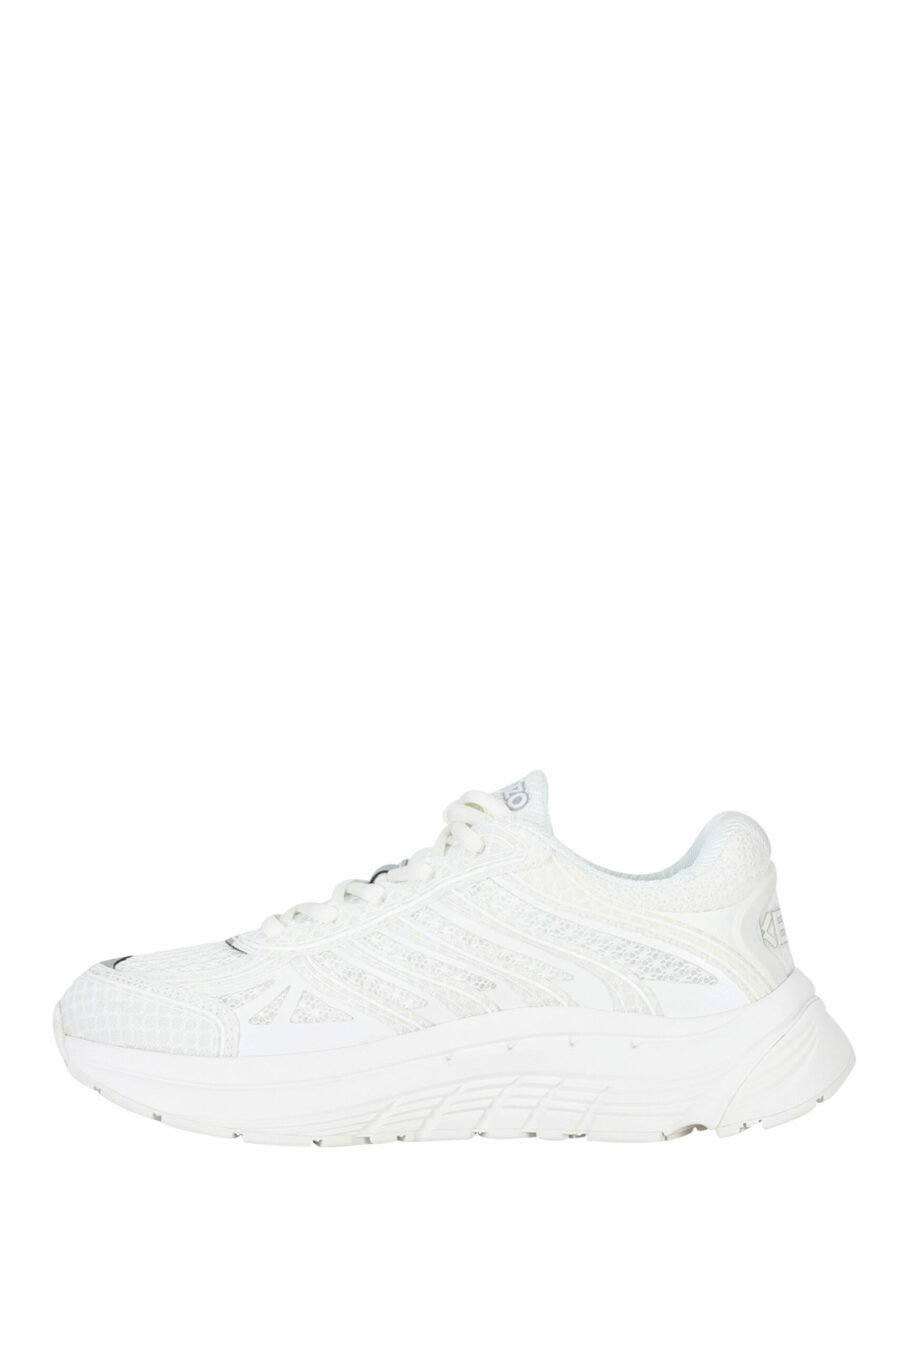 Zapatillas blancas "kenzo tech runner" con minilogo blanco - 3612230549739 2 scaled